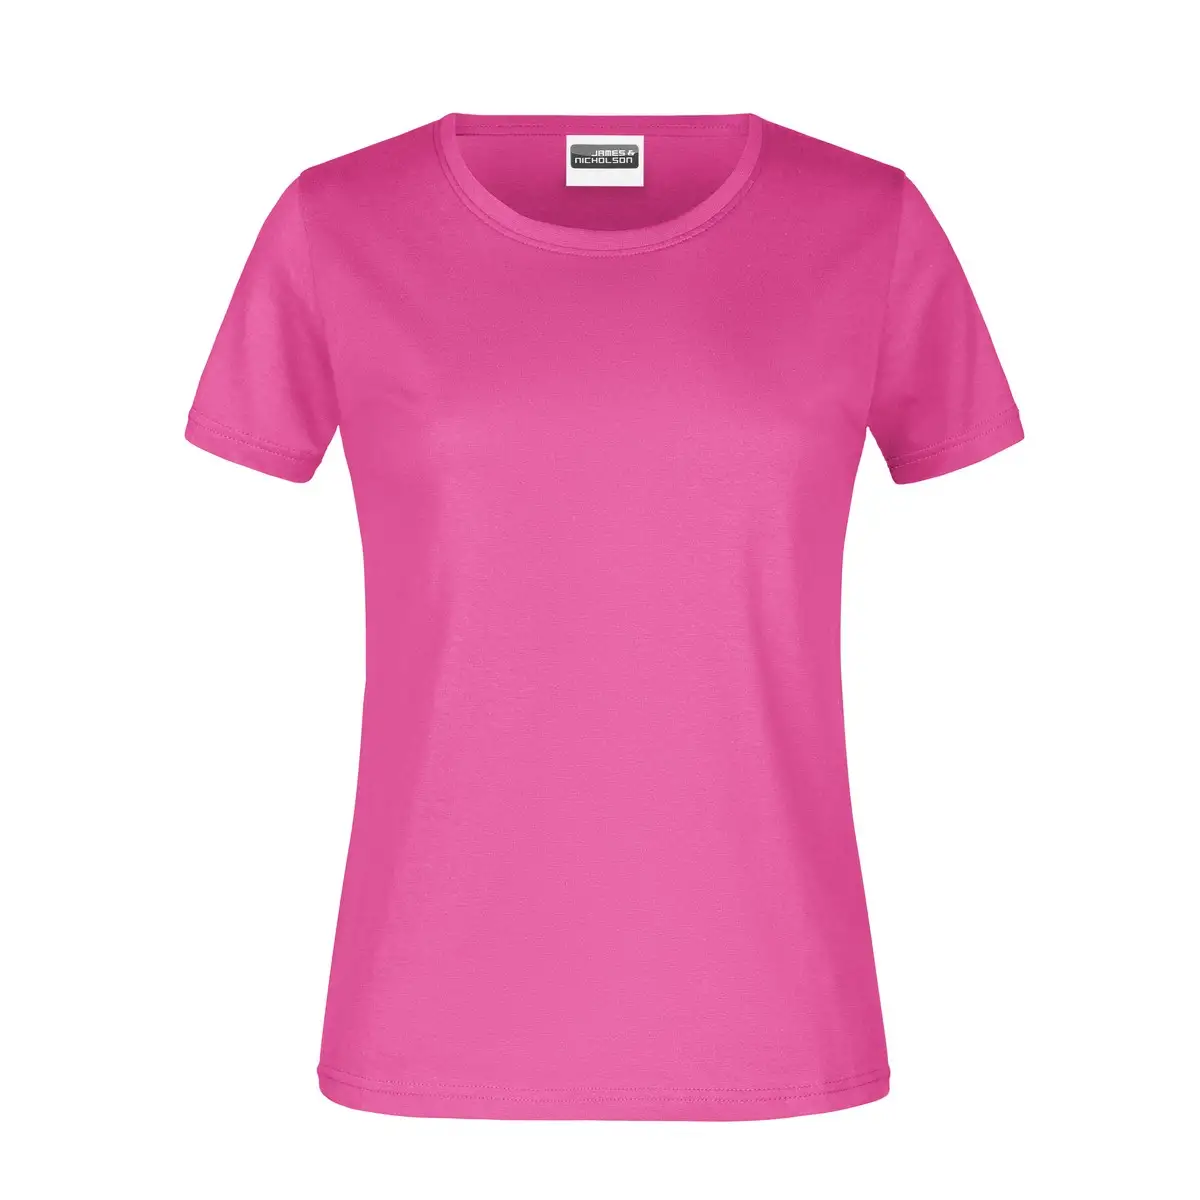 T-Shirt Donna Manica Corta Cotone Personalizzata - James & Nicholson